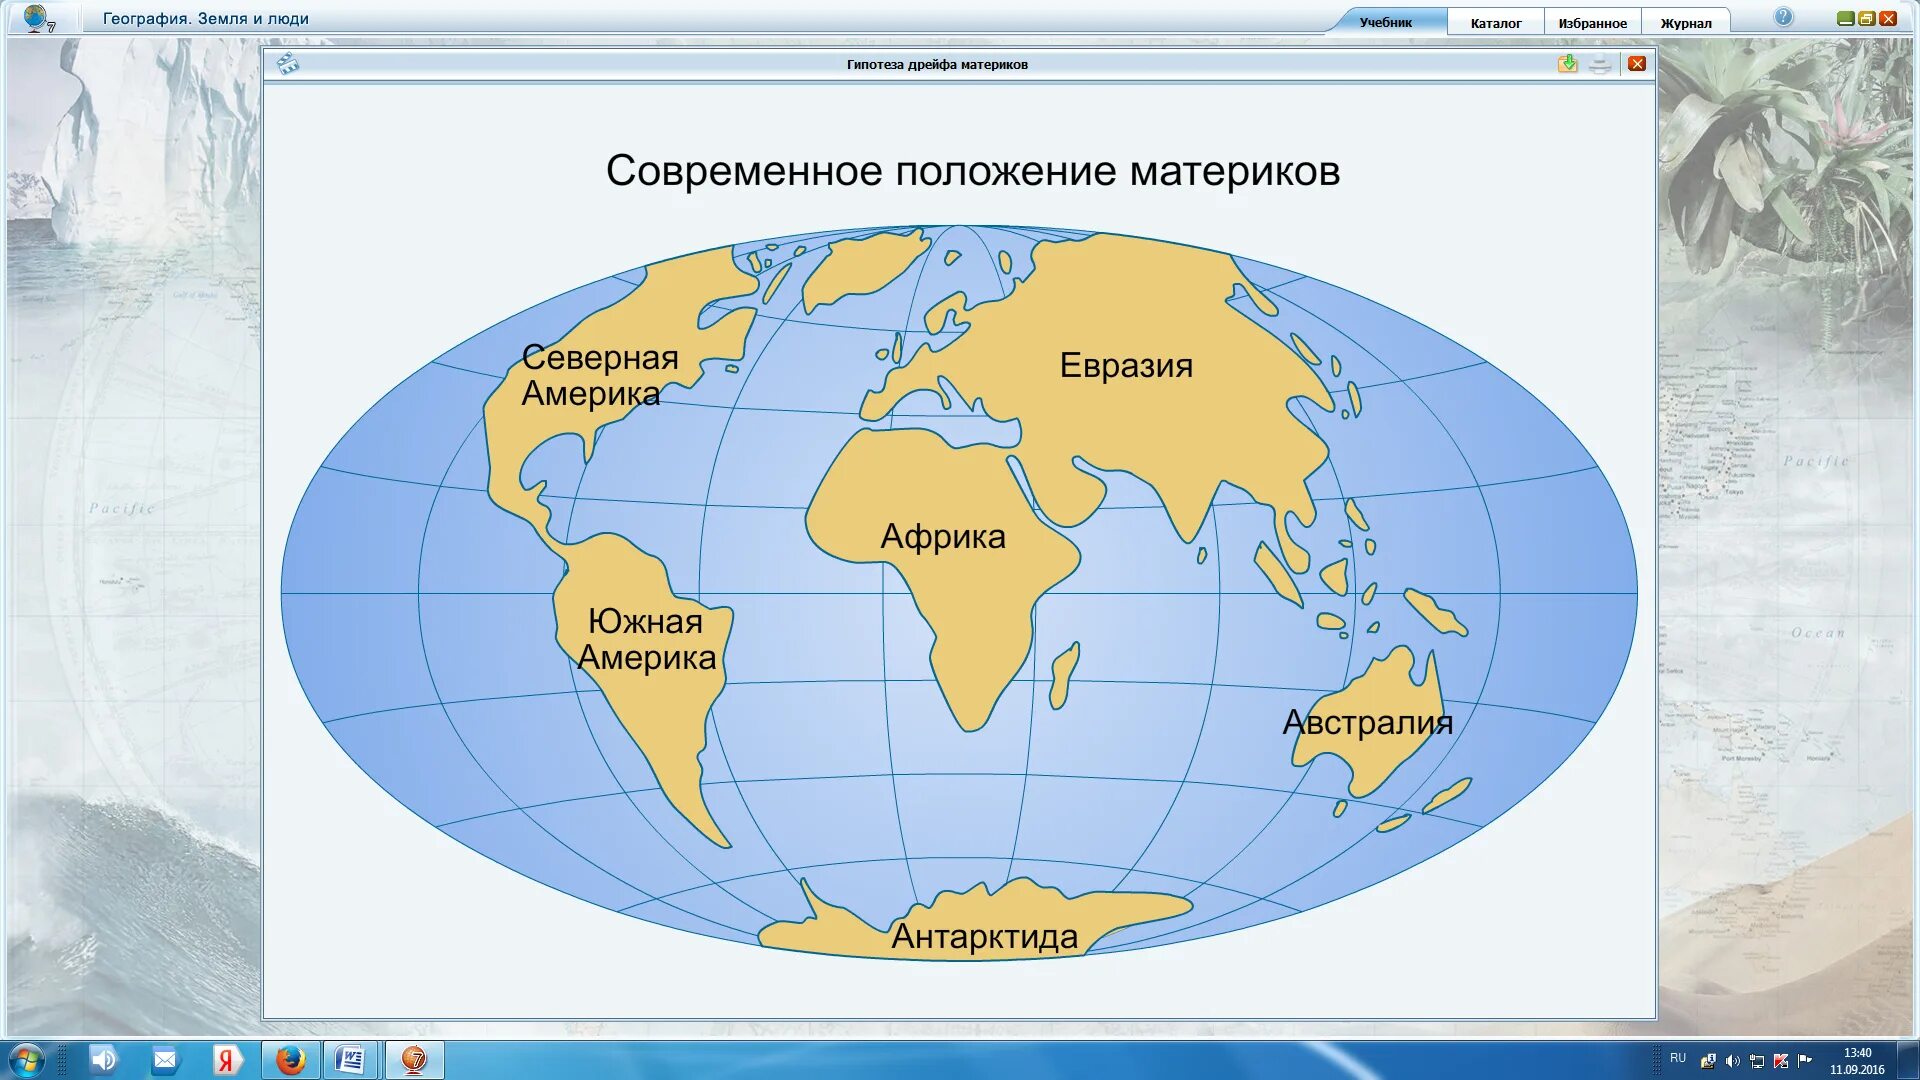 Материки земного шара на карте с названиями. Материки на карте с названиями. Название материков. Карта с материками и странами